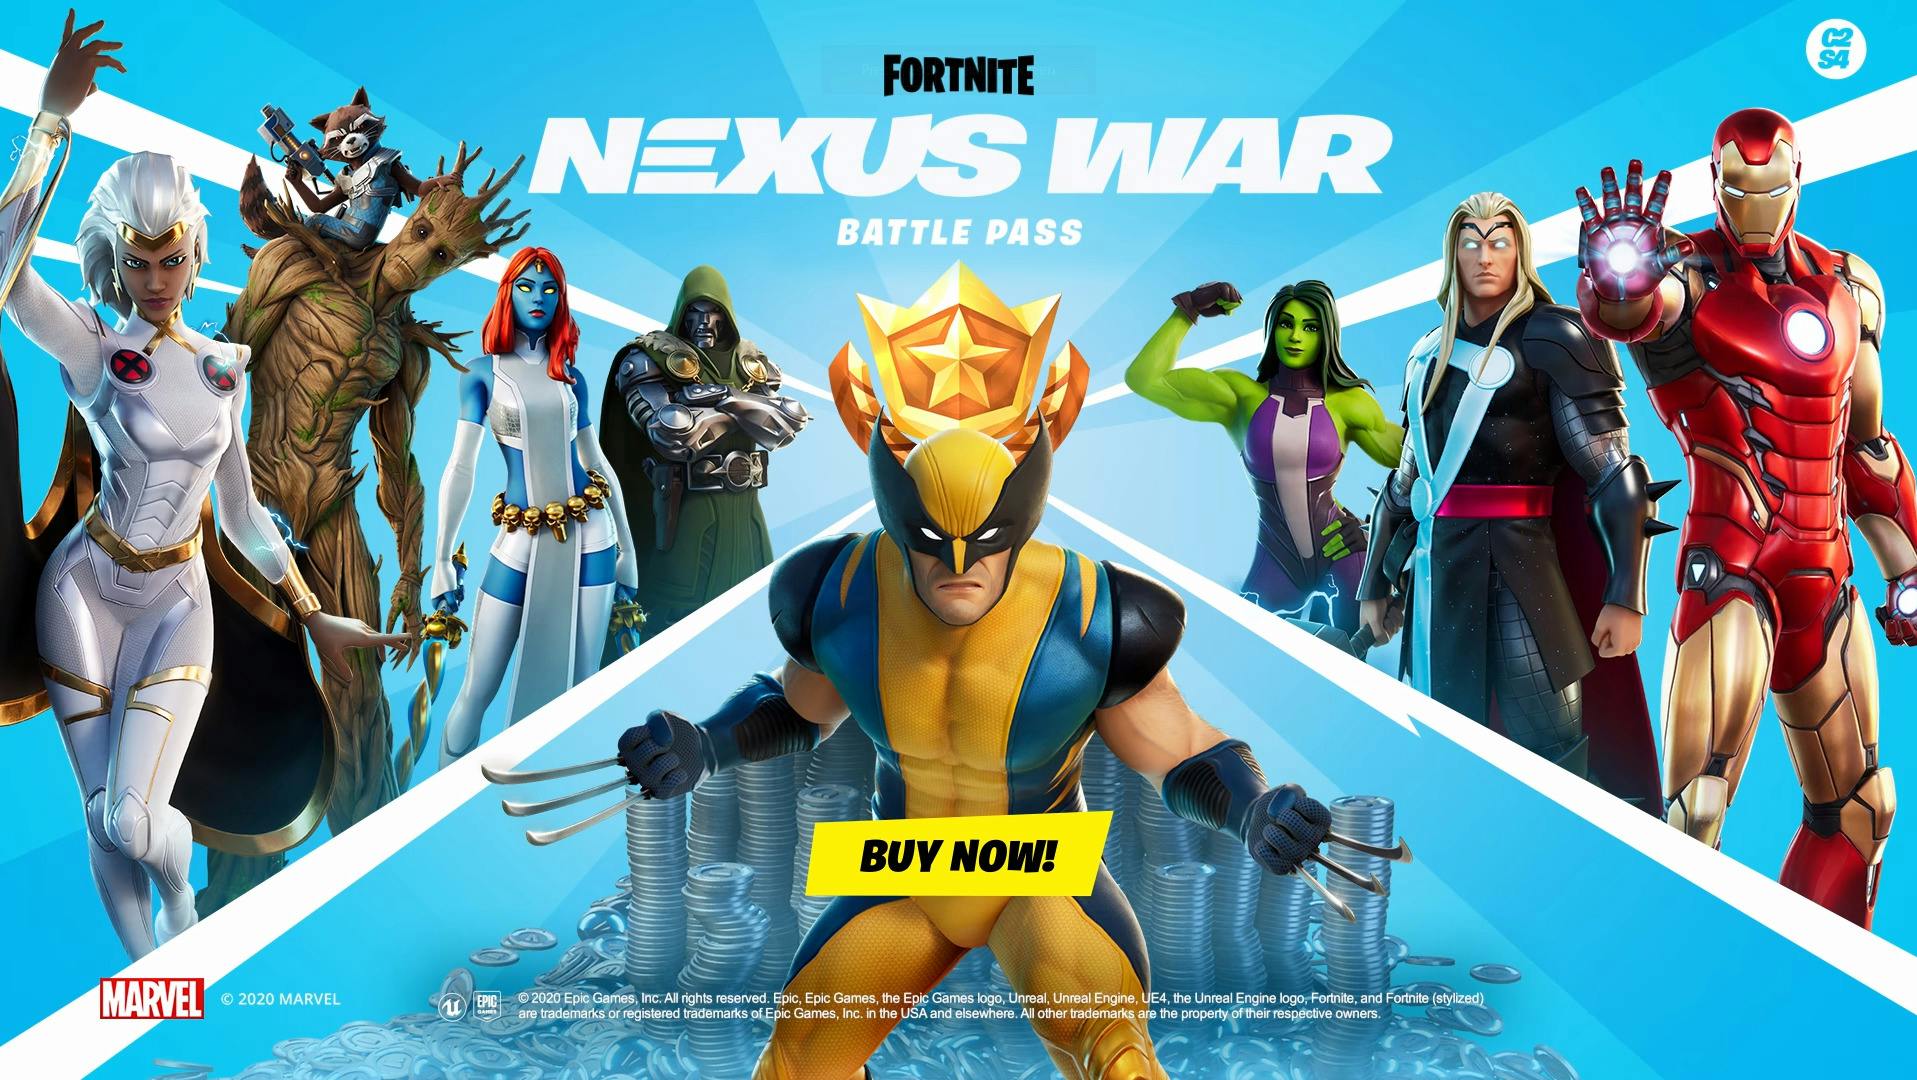 The Fortnite "Nexus War" Battle Pass featured a Marvel theme.